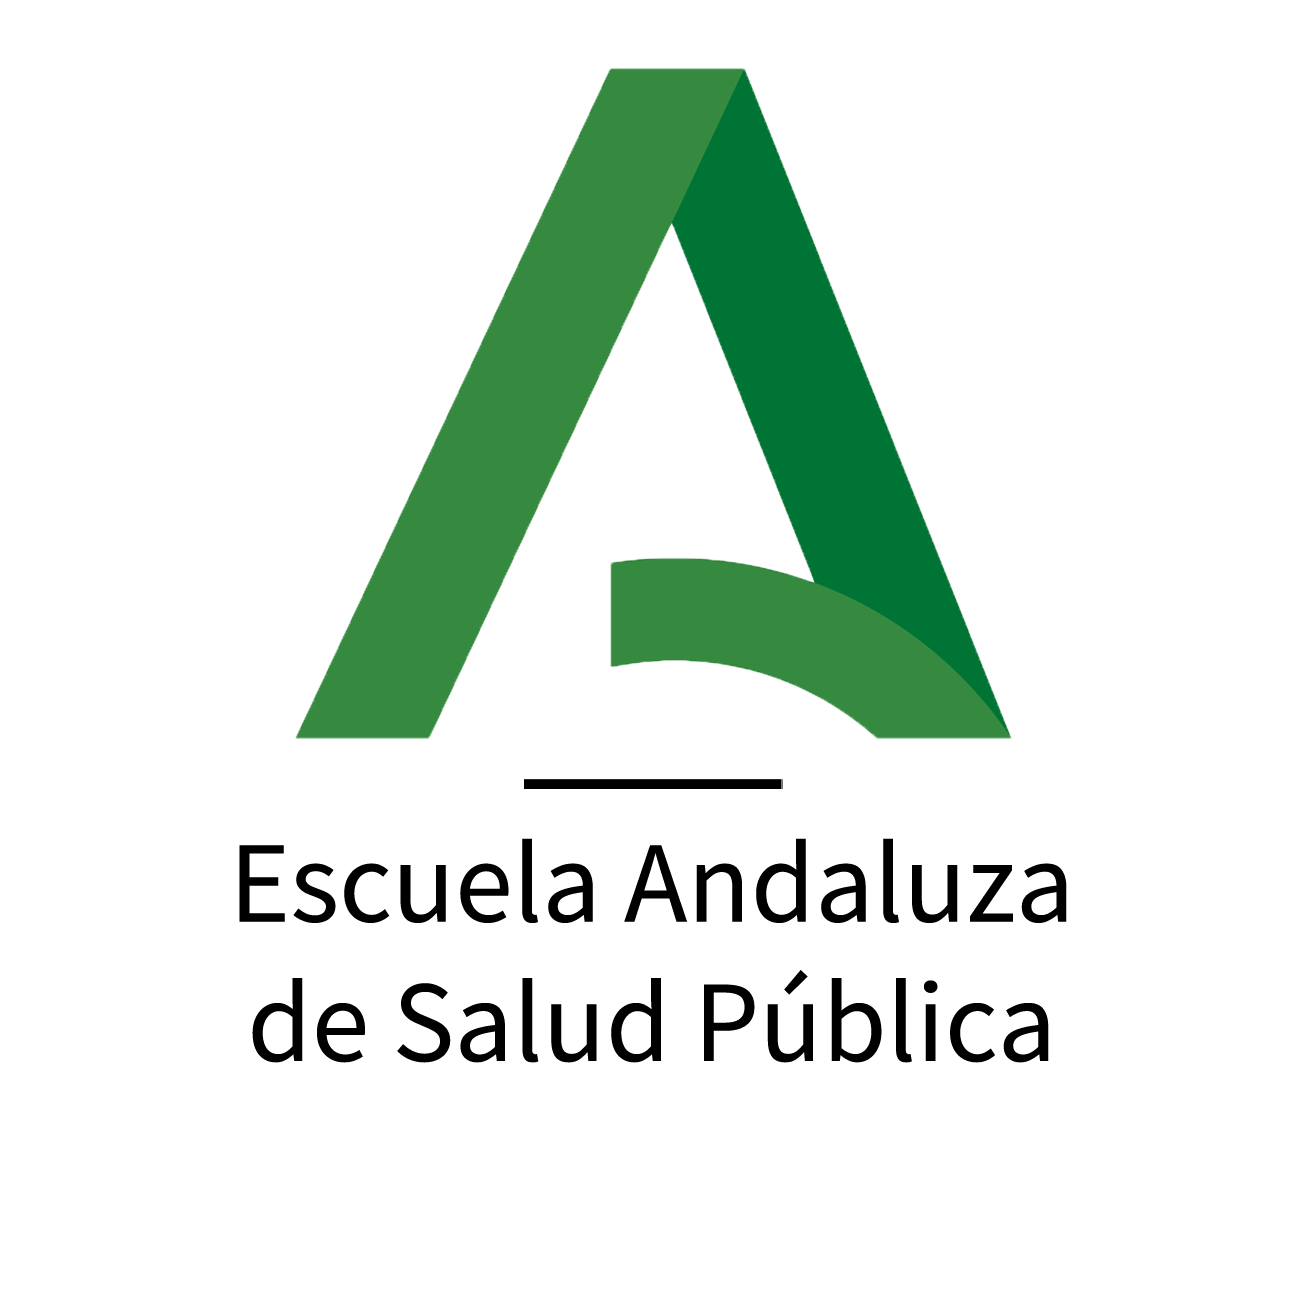 La Escuela Andaluza de Salud Pública busca proveedores para recopilar información sobre salud y bienestar en zonas desfavorecidas